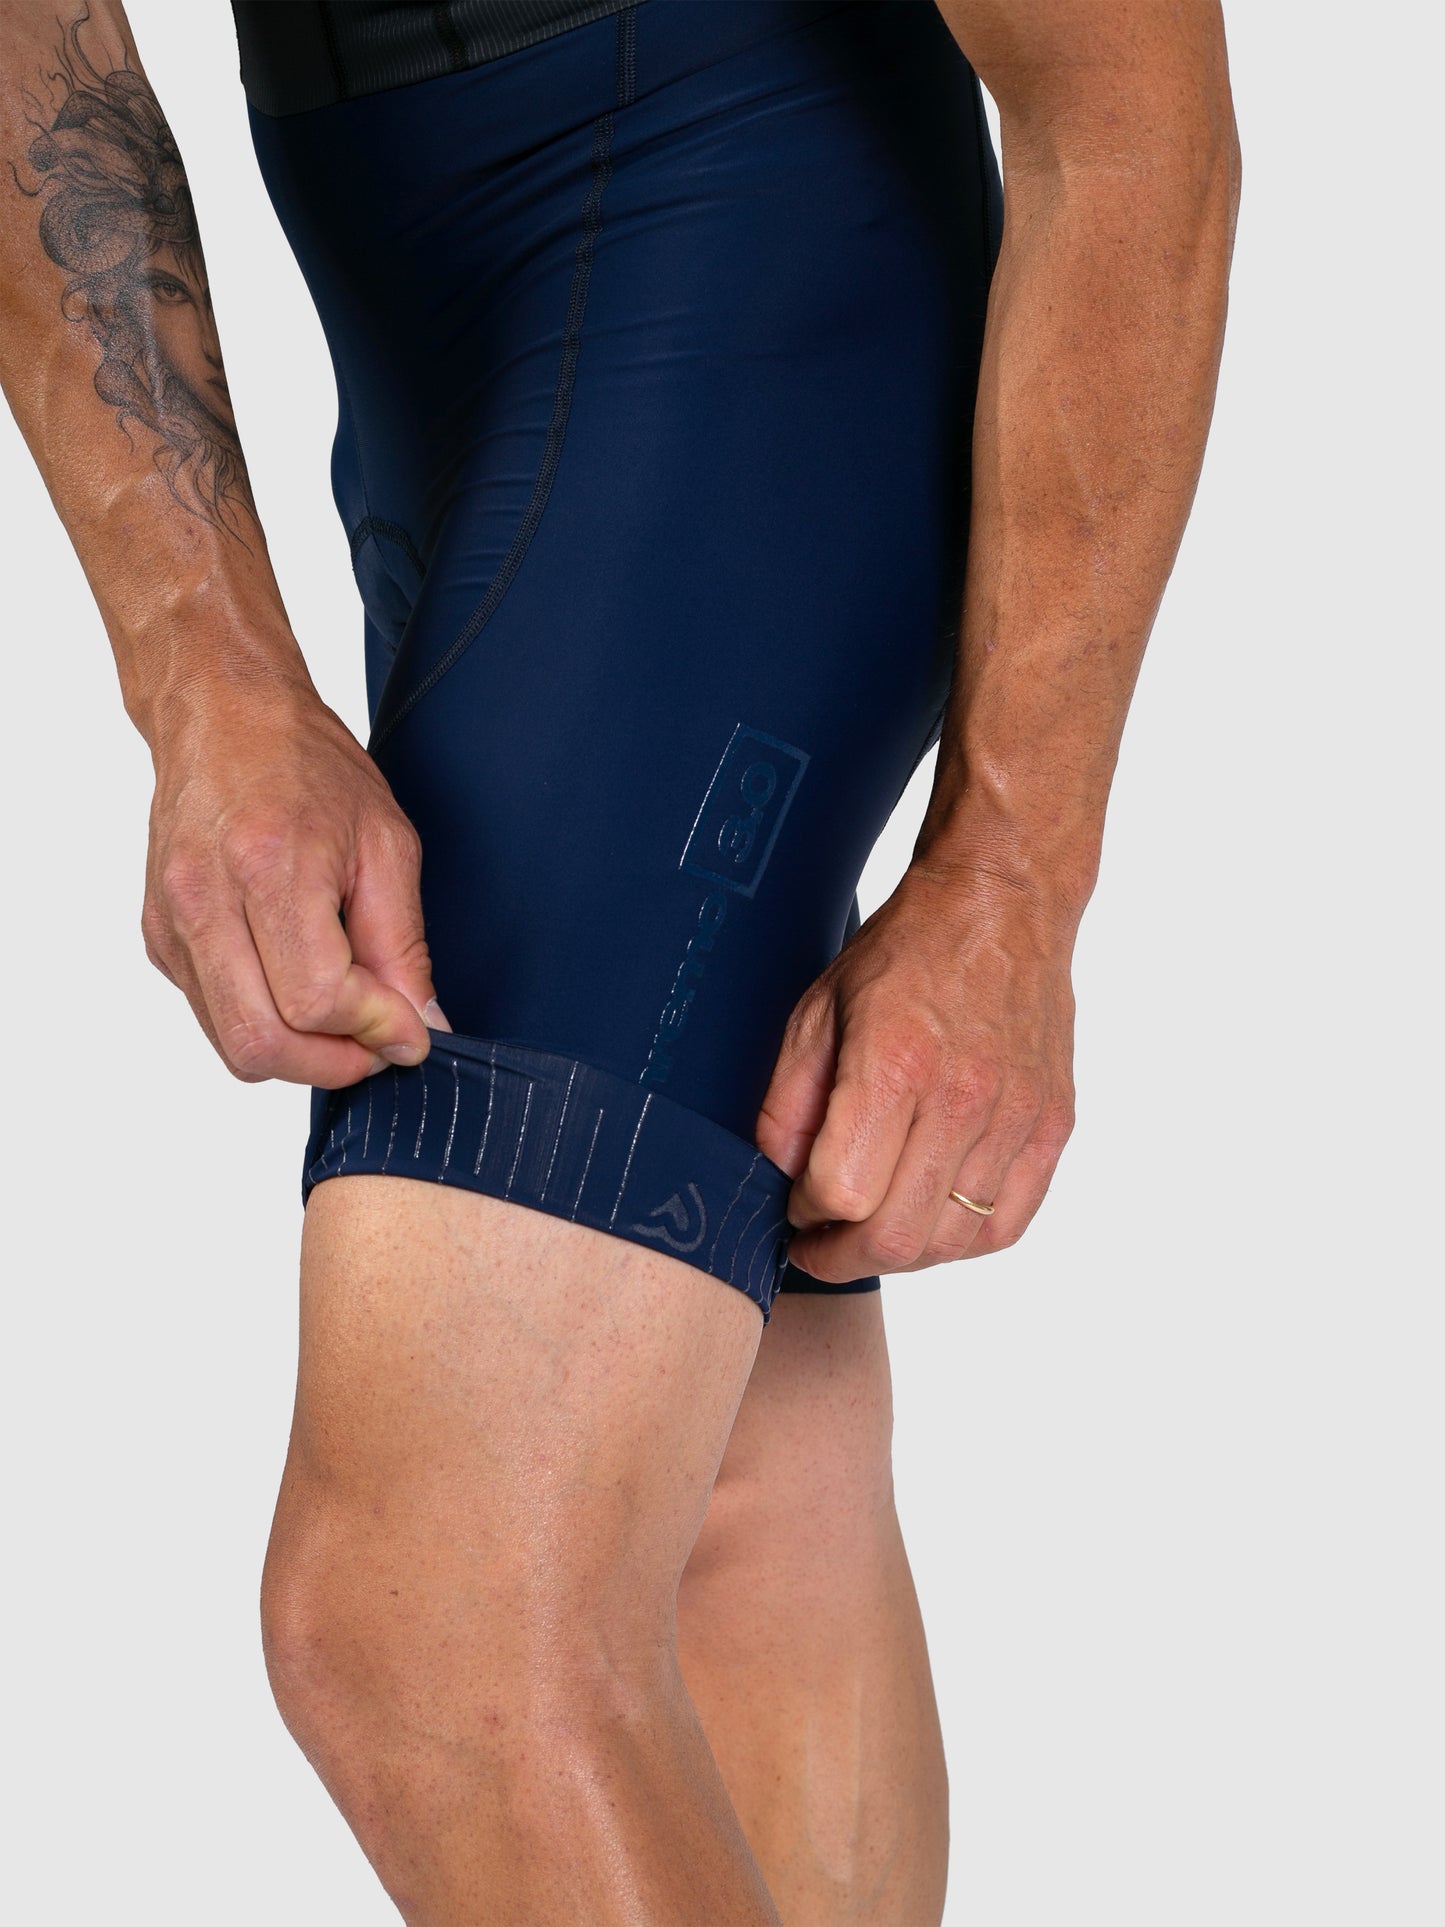 San Remo 22 Bib Shorts - Male